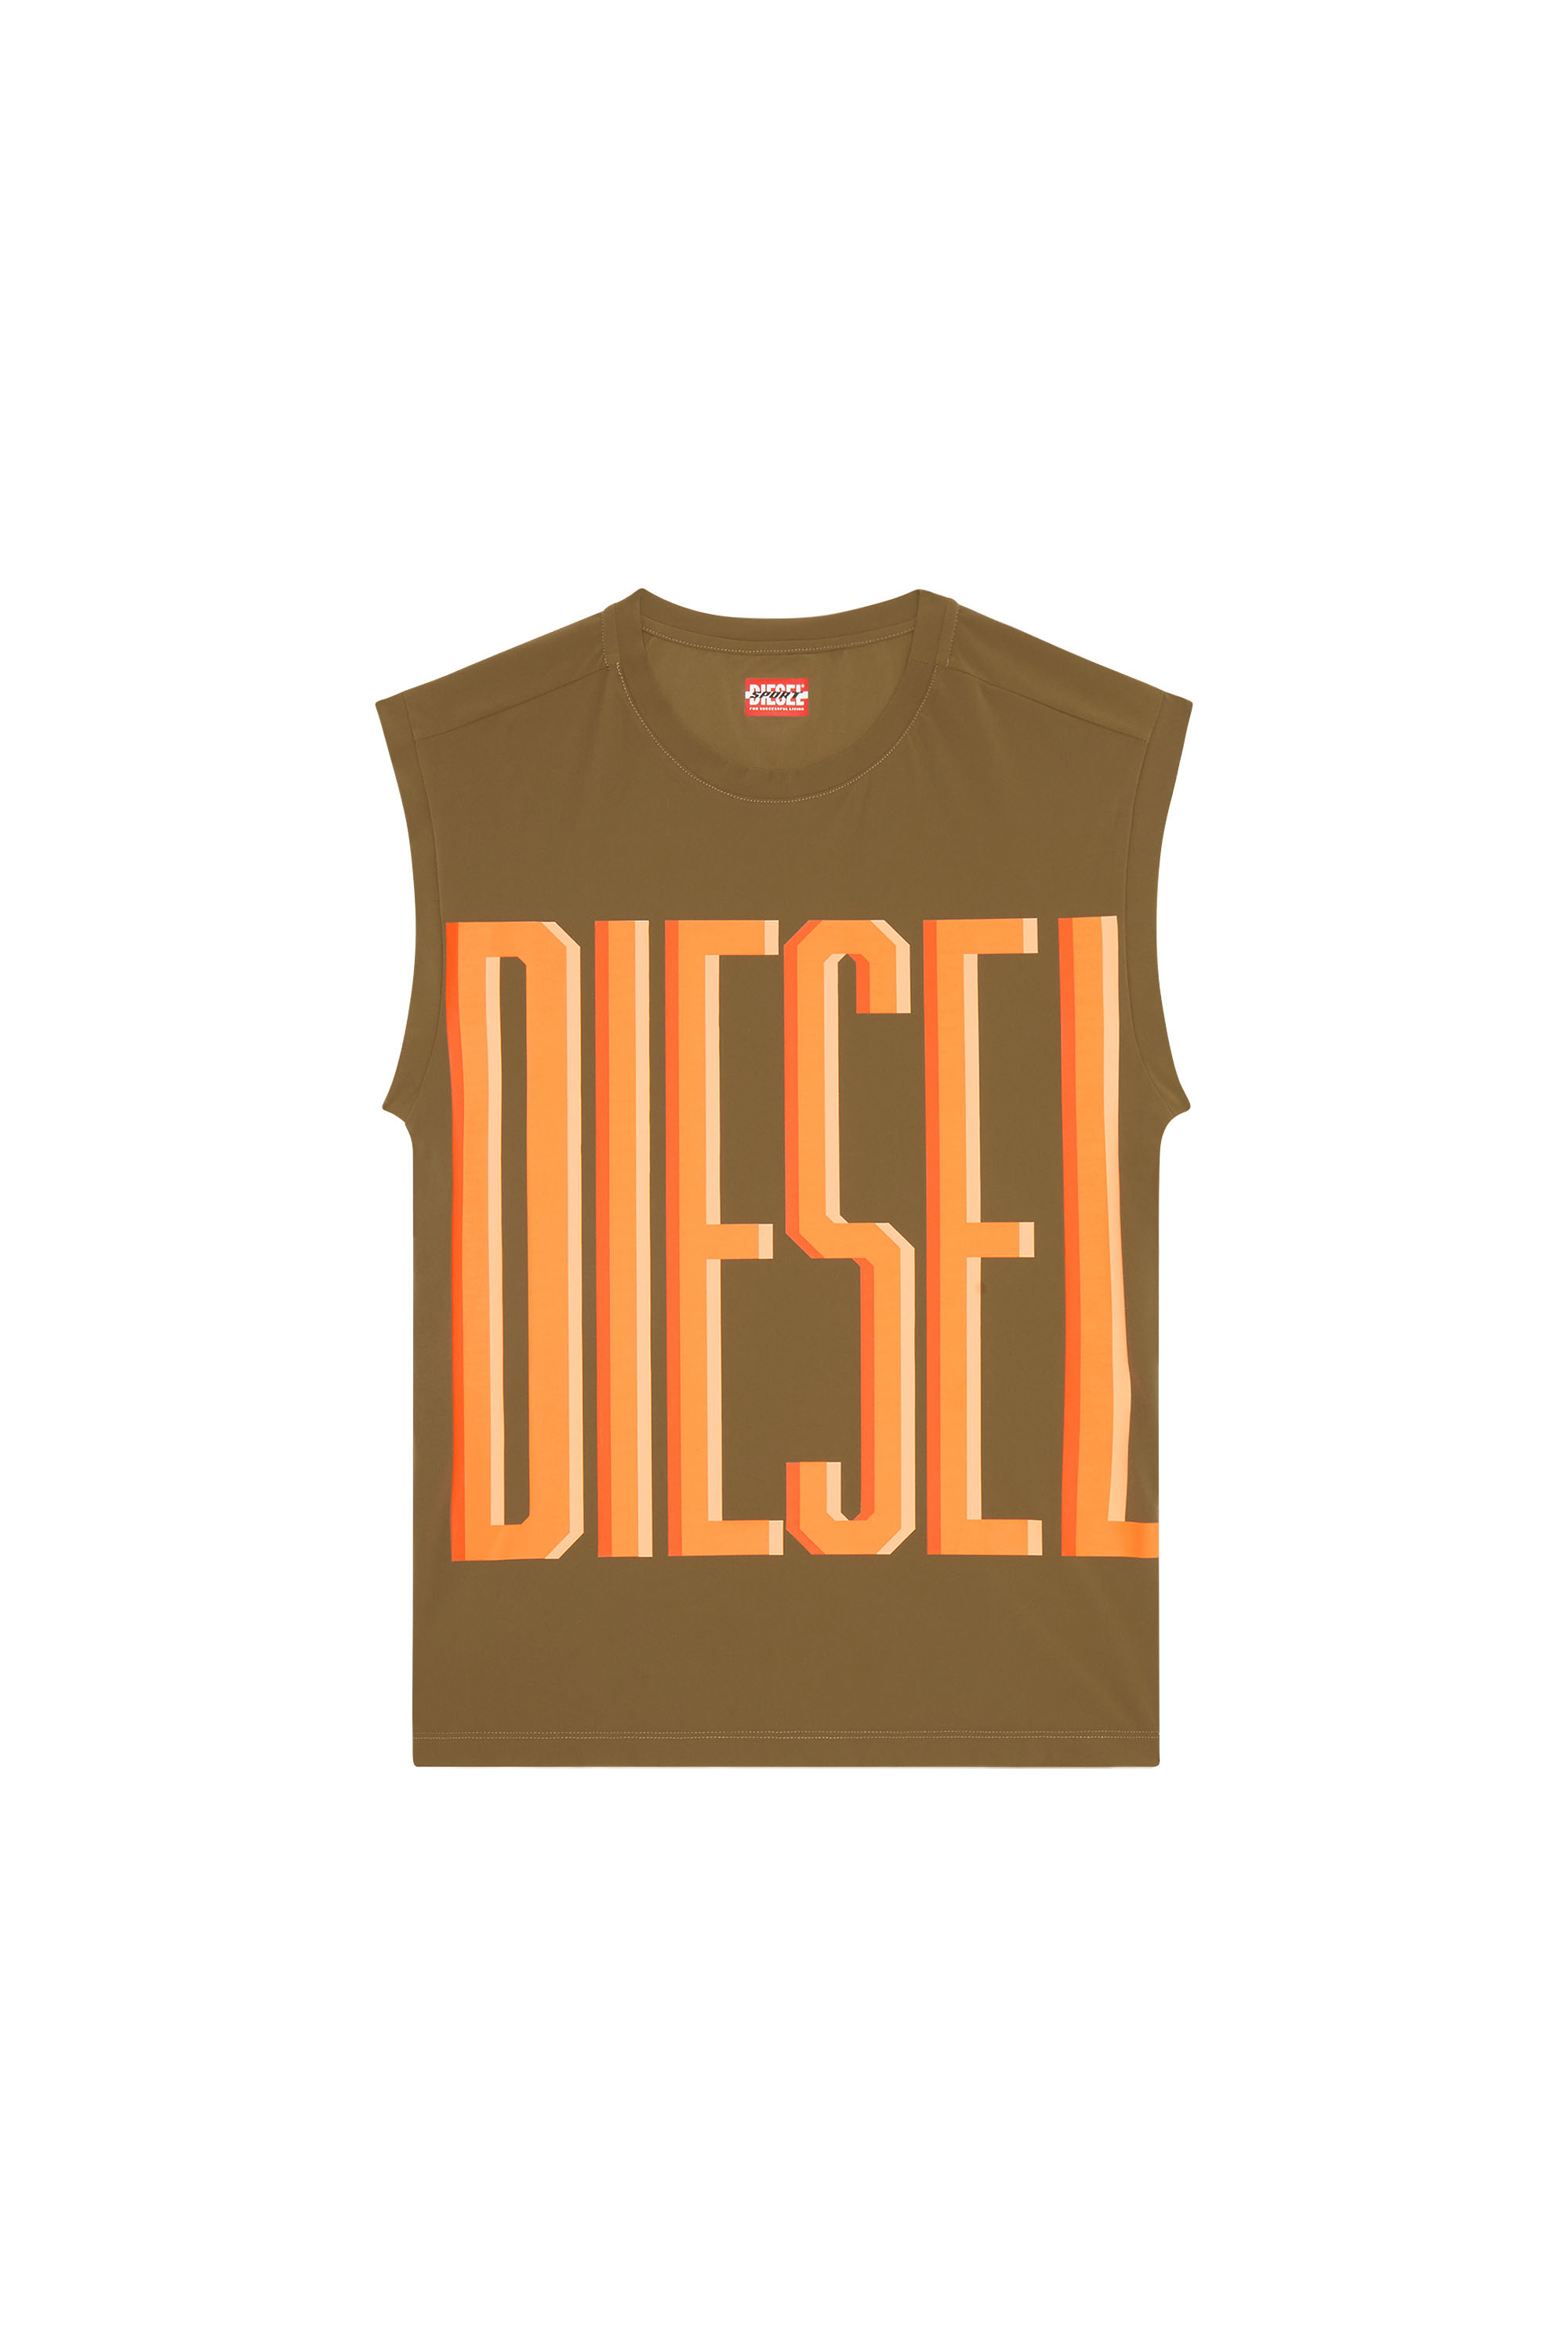 Diesel - AMST-RIDGE-WT40, Brown - Image 5